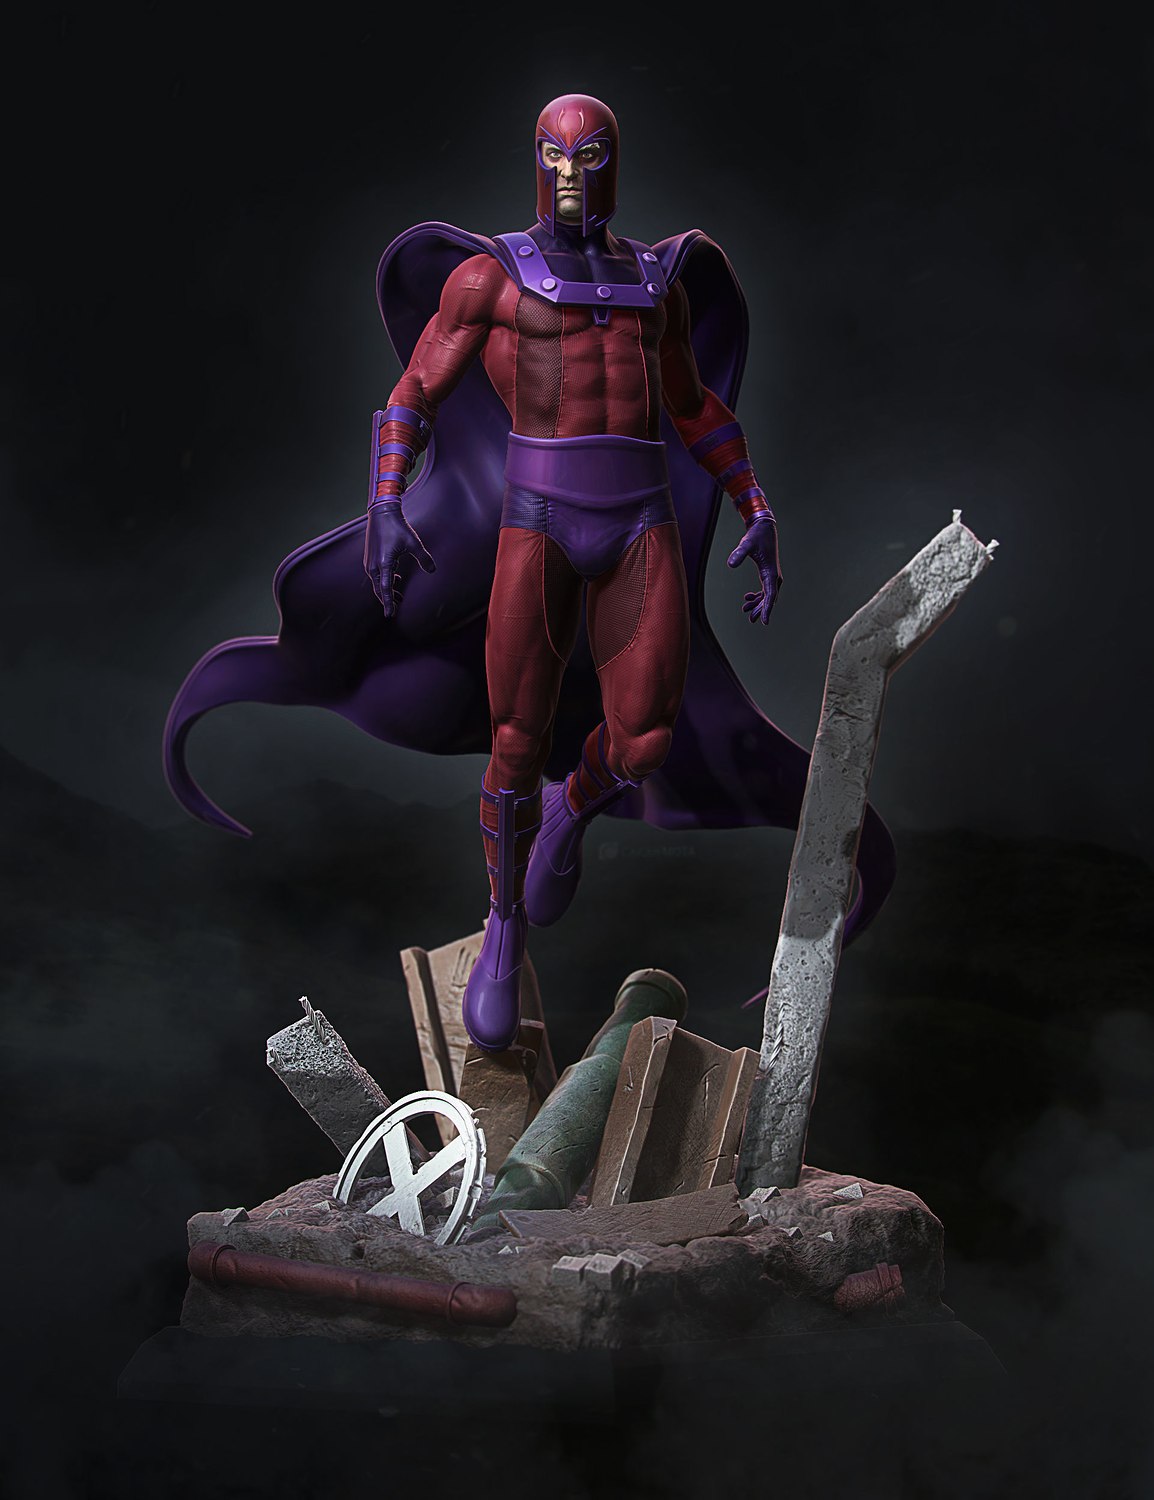 Magneto from X-Men